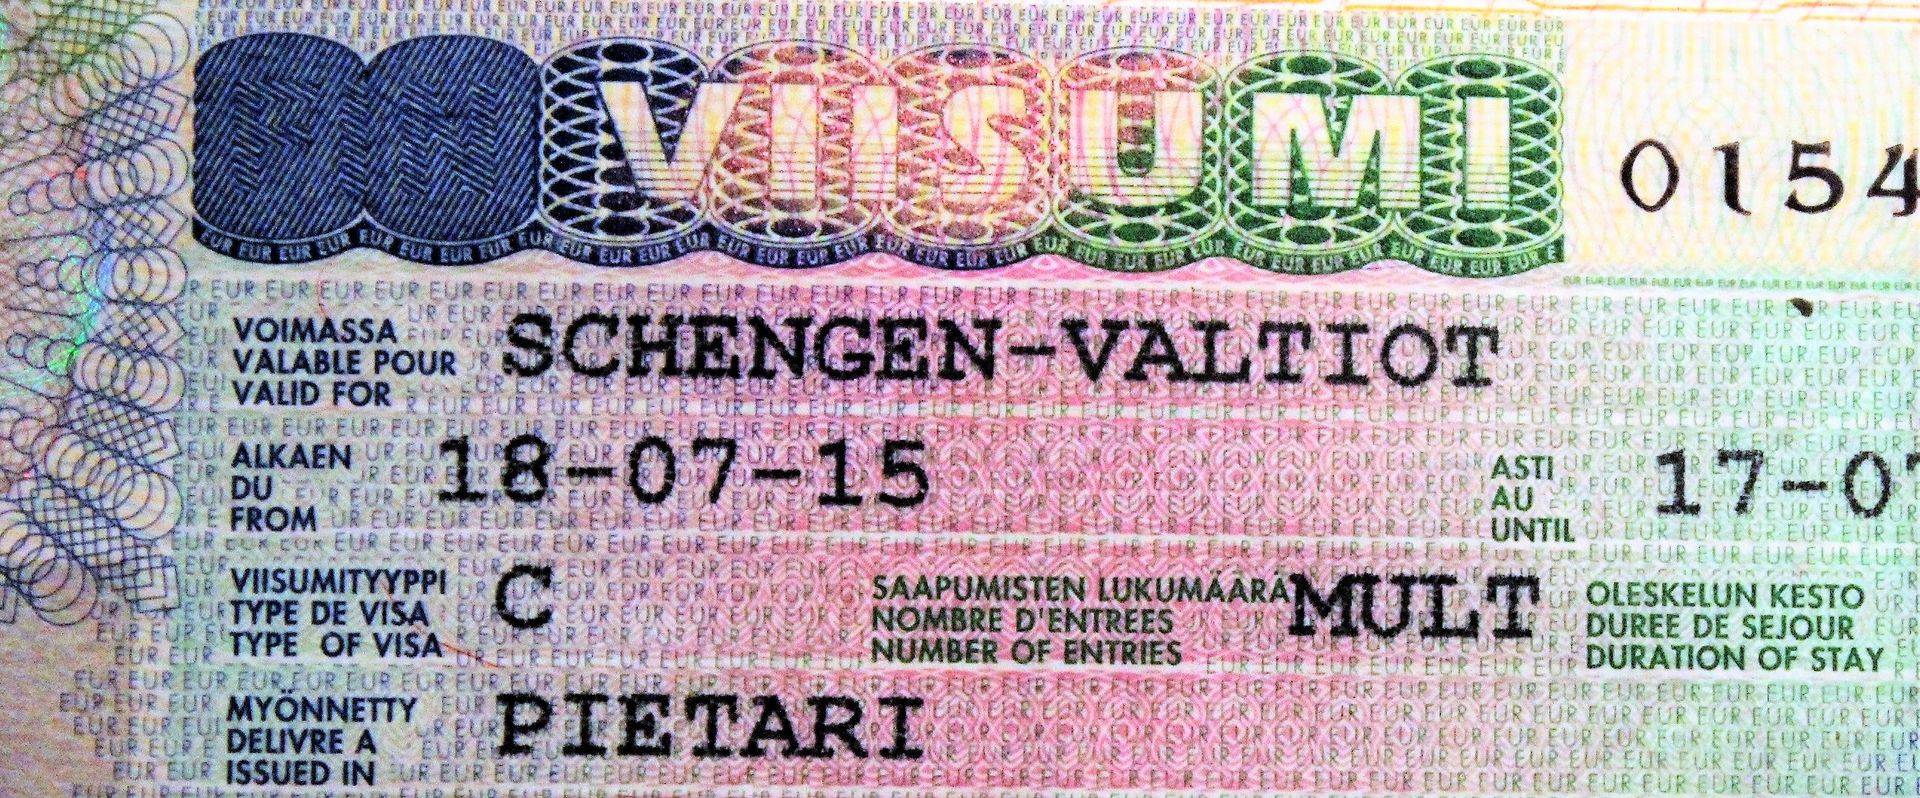 Как оформить шенгенскую визу в санкт-петербурге |